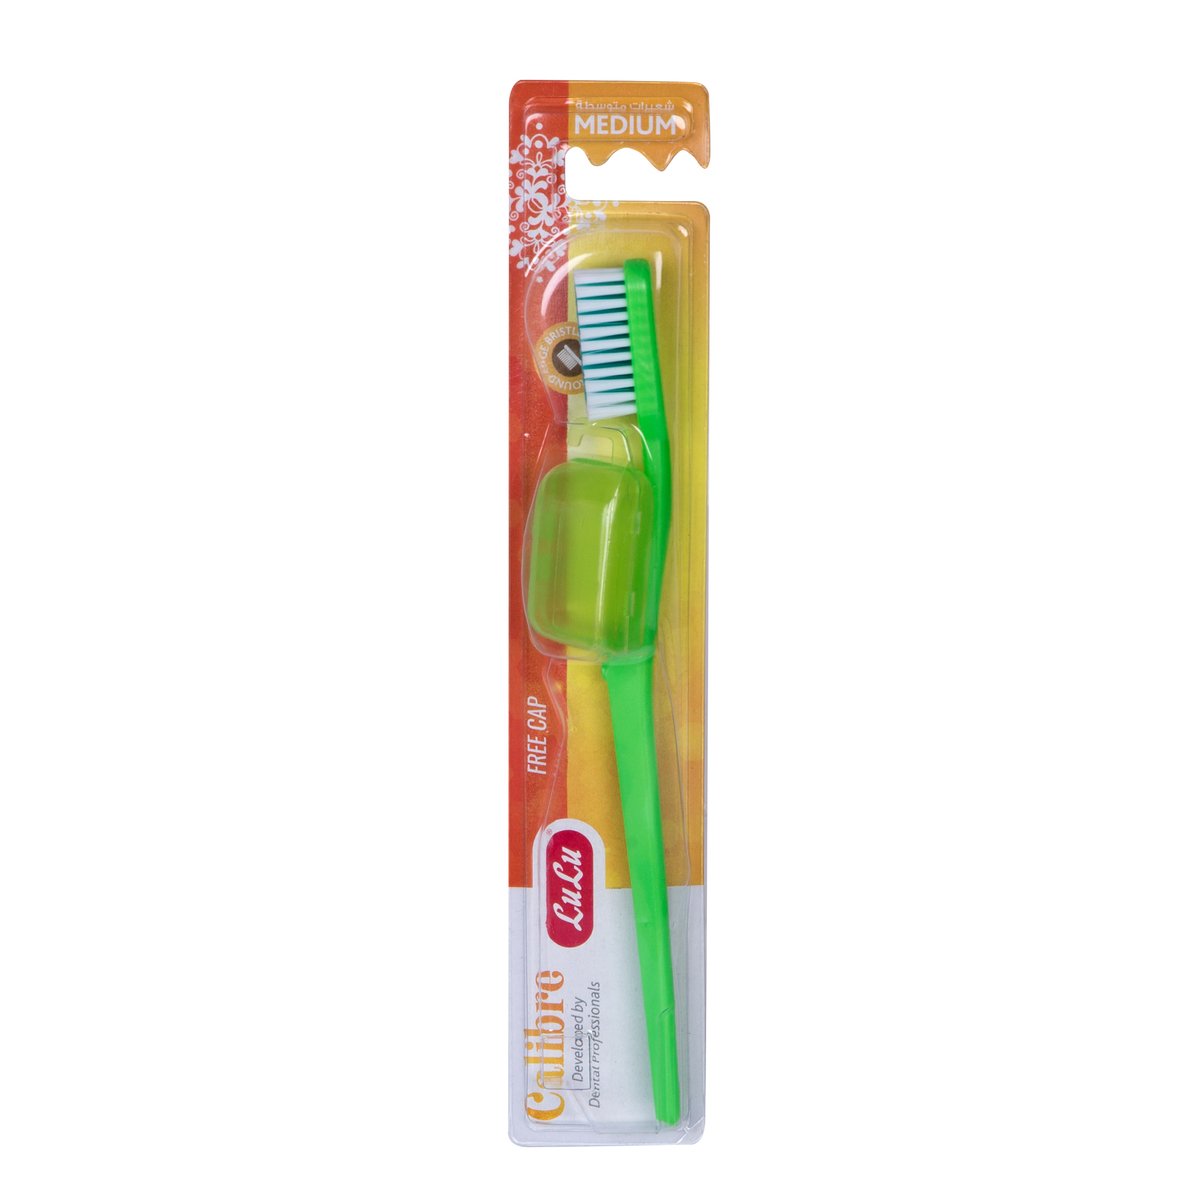 اشتري قم بشراء LuLu Toothbrush Medium Calibre Assorted Color 1 pc Online at Best Price من الموقع - من لولو هايبر ماركت Toothbrushes في الامارات